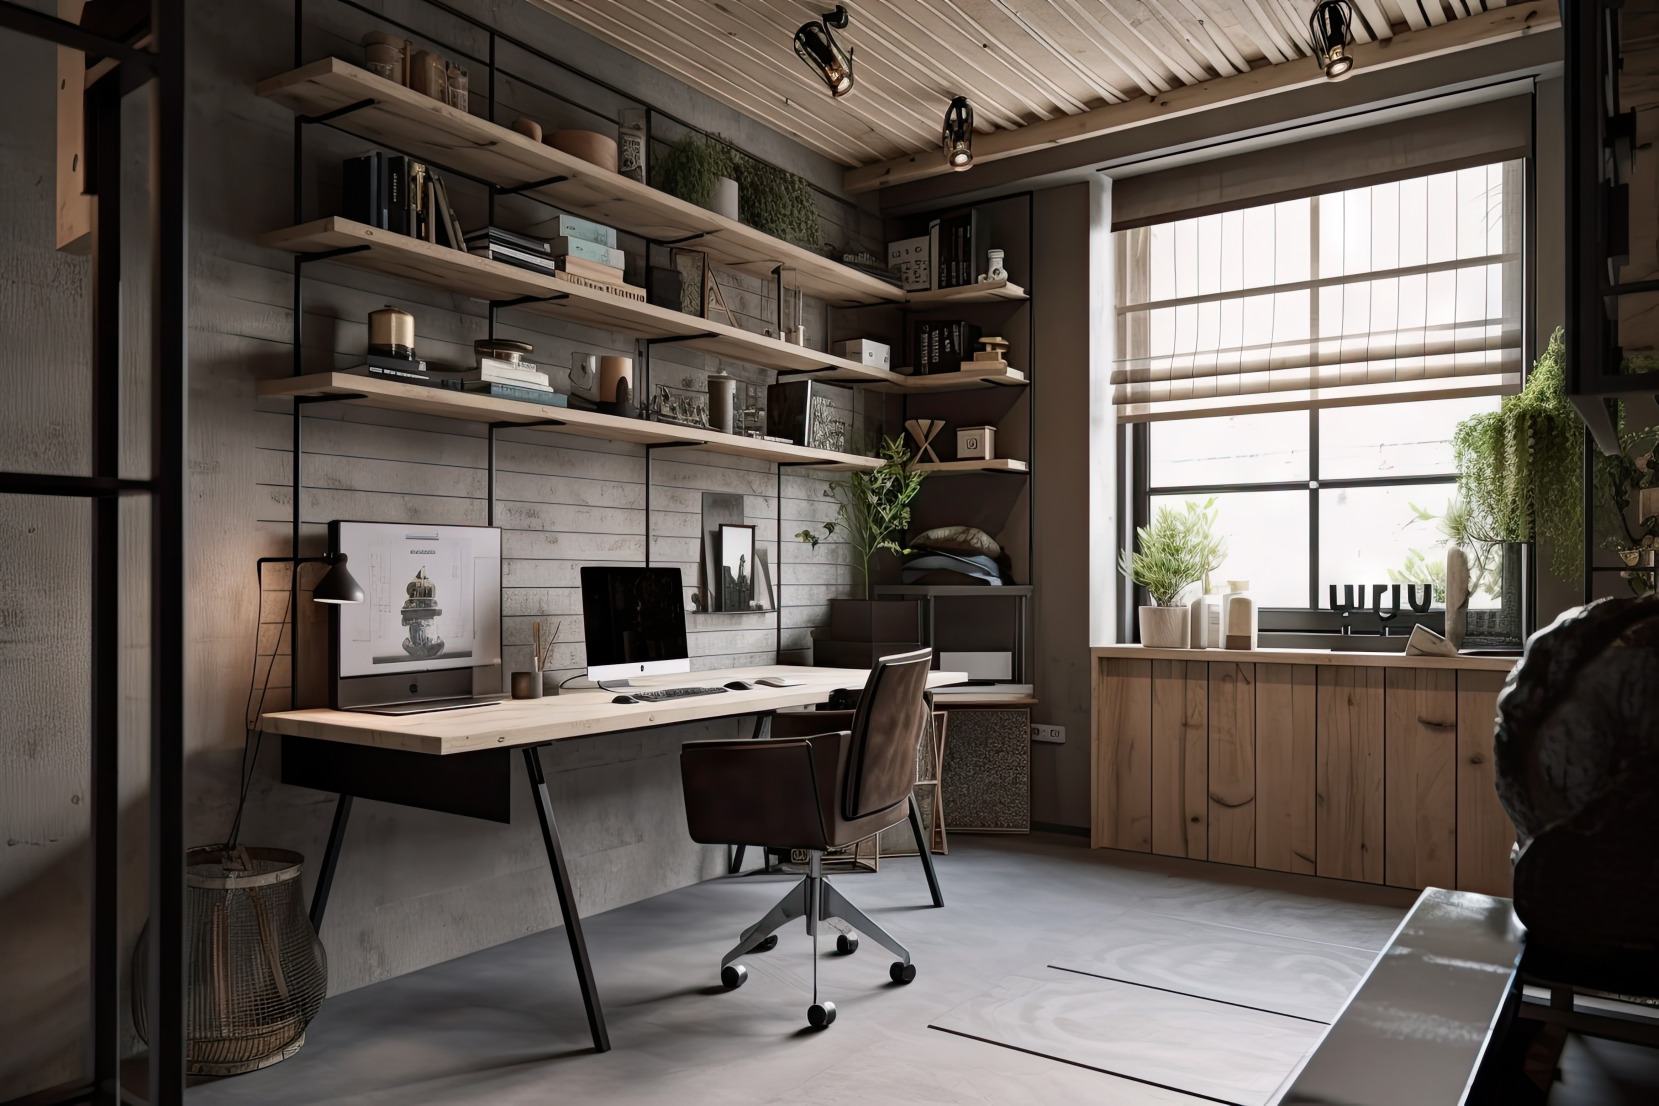 Ancien garage transformé en bureau à domicile élégant et fonctionnel avec un mobilier épuré et une décoration moderne